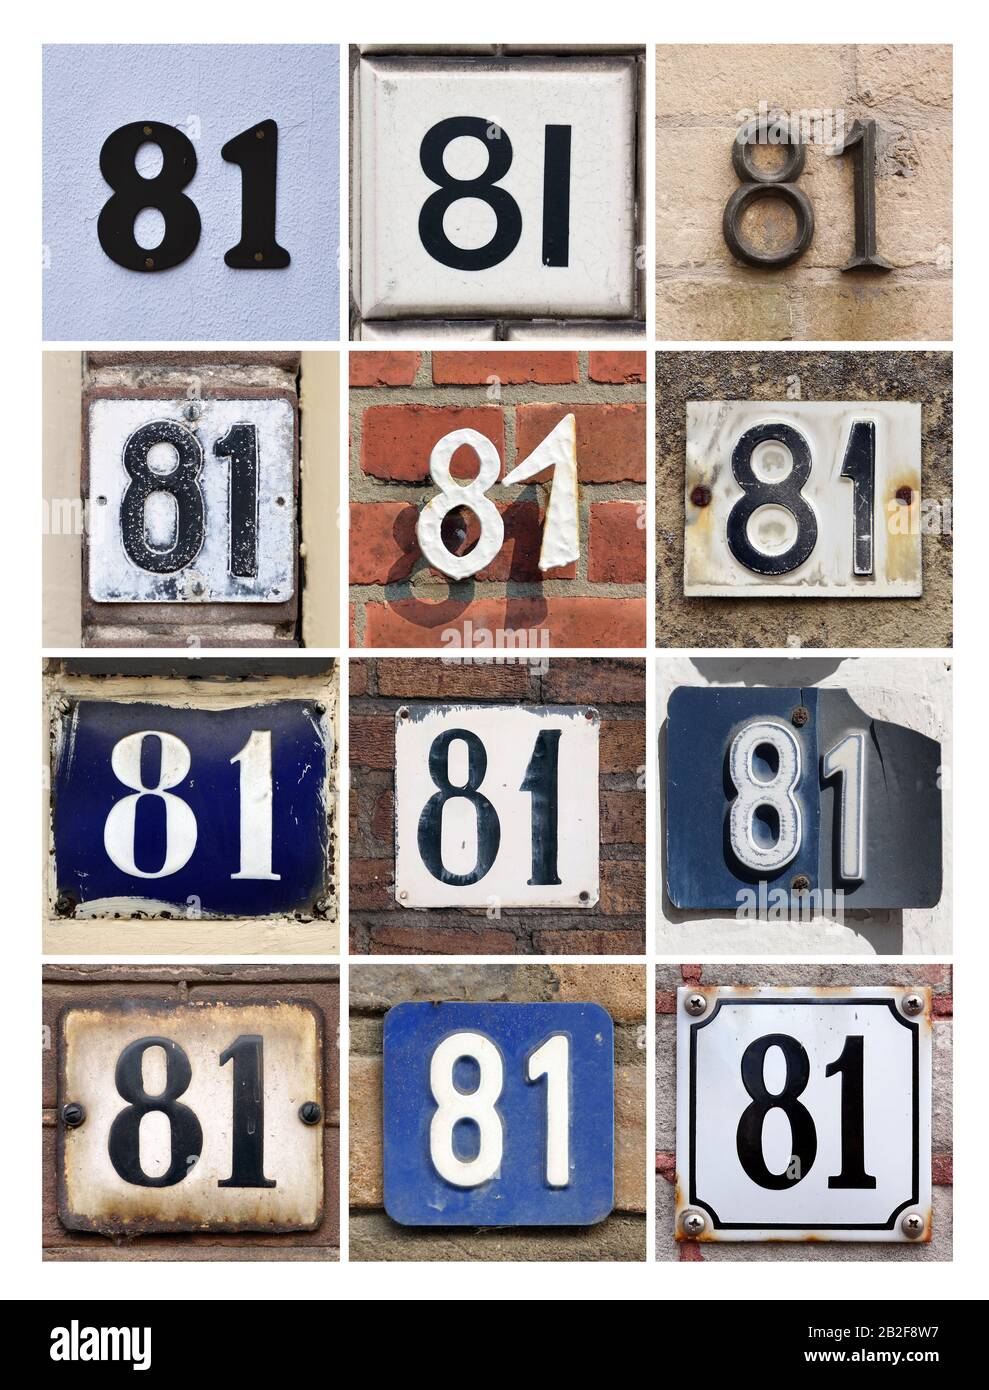 signe-numero-81-collage-des-numeros-de-maison-quatre-vingt-et-un-2b2f8w7.jpg